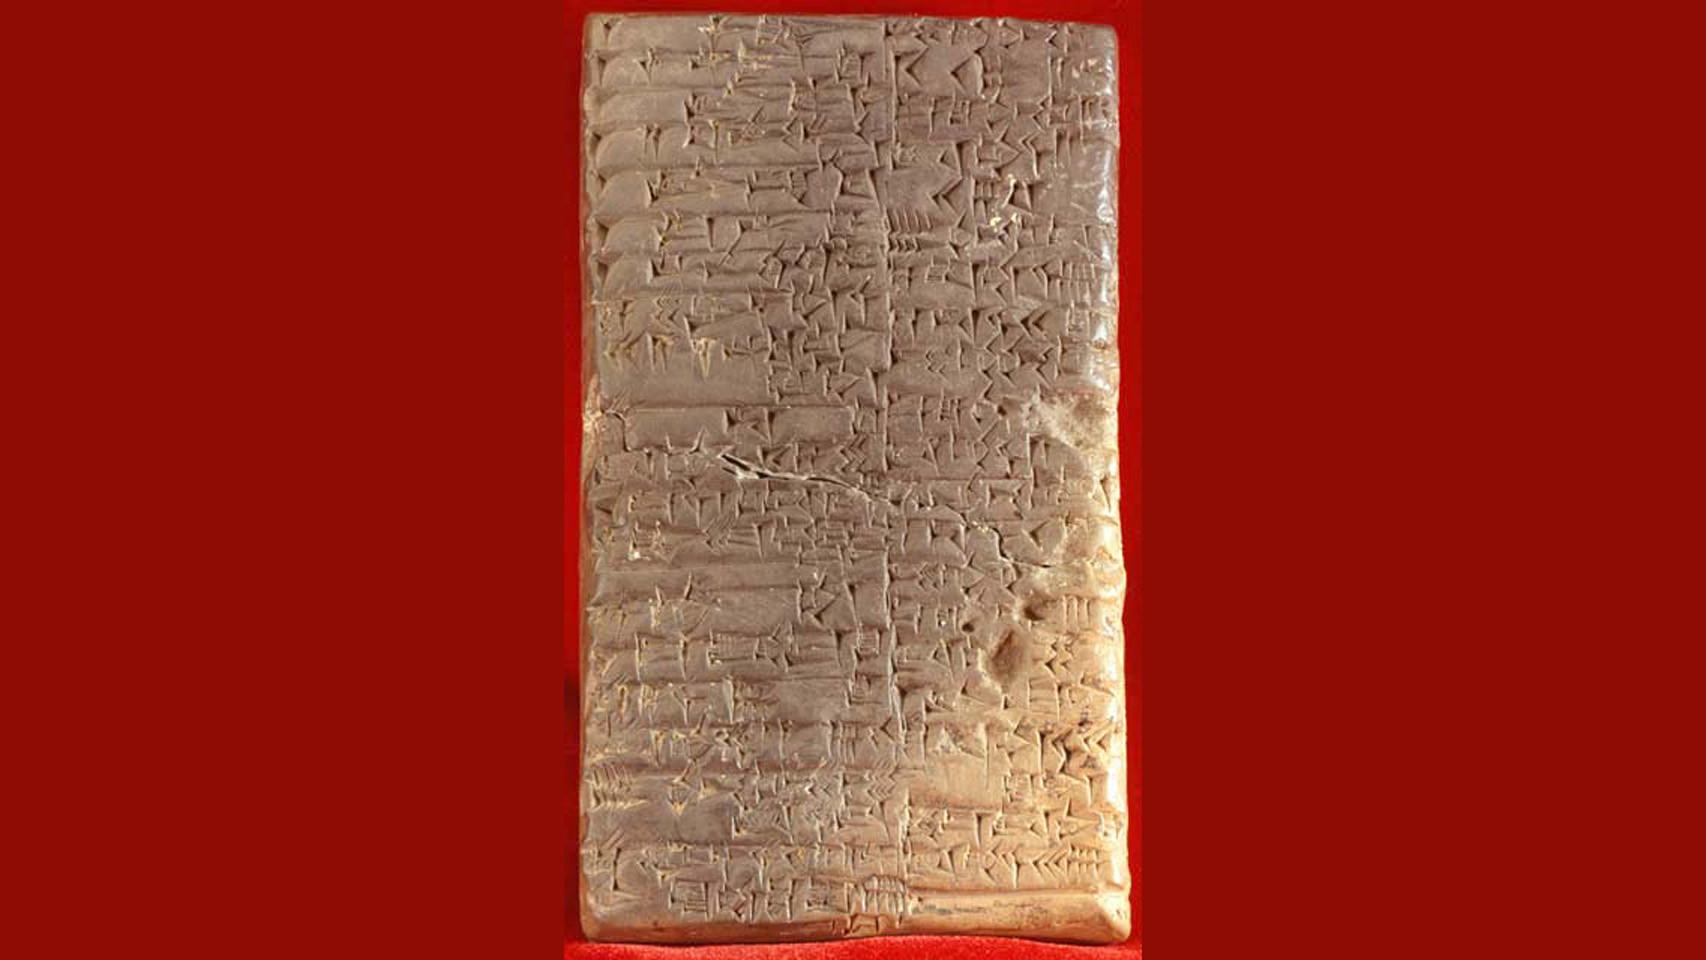 Tabla con escritura en acadio cuneiforme.